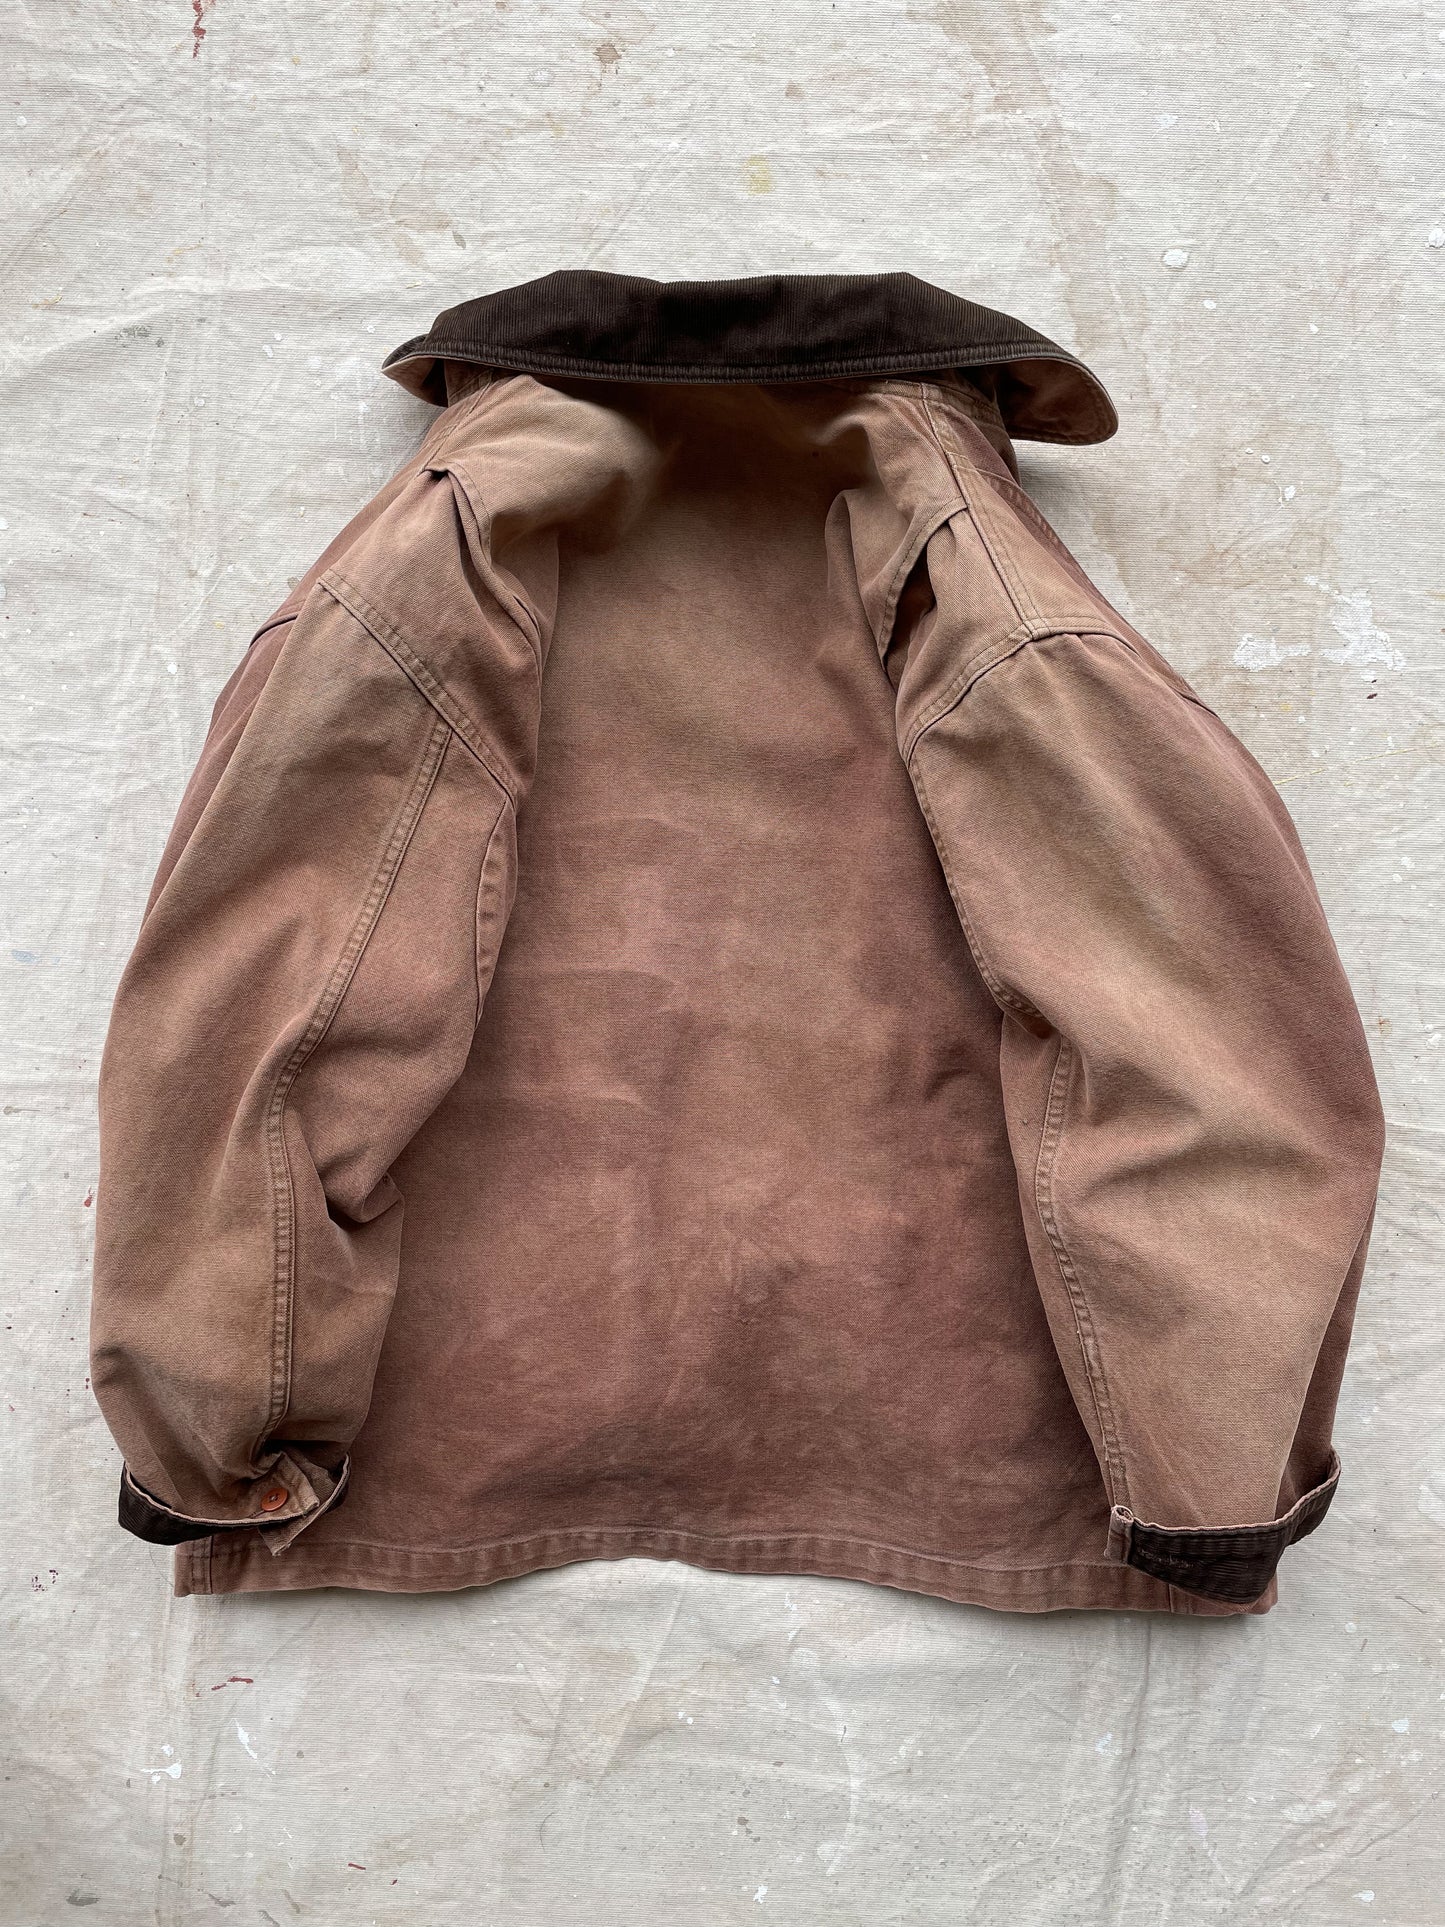 L.L. Bean Blanket Lined Field Coat—[L]